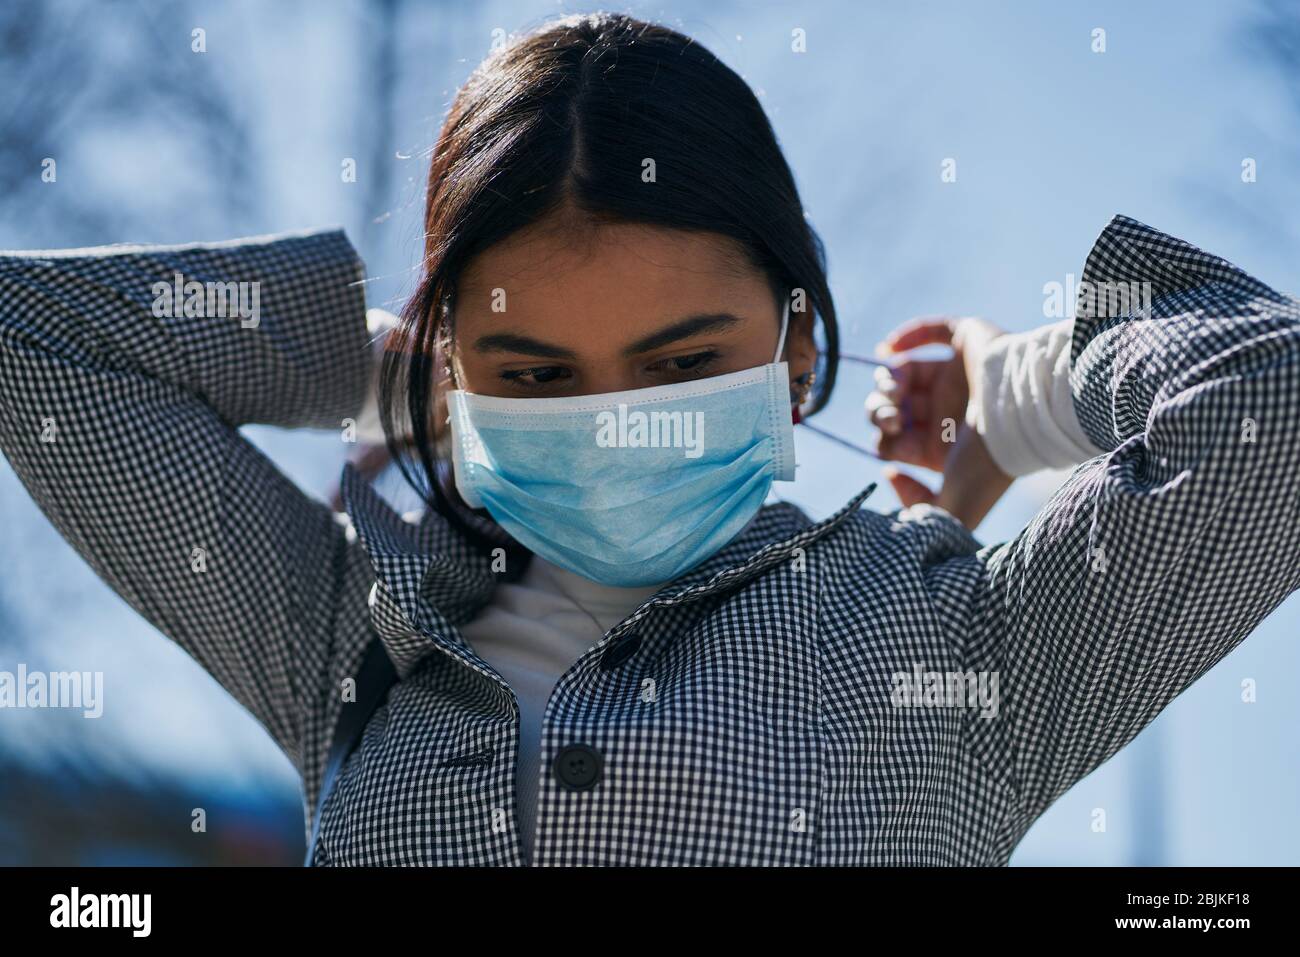 Chica poniendo una máscara protectora para evitar el contagio mientras camina por la calle. Concepto de coronavirus. Foto de stock